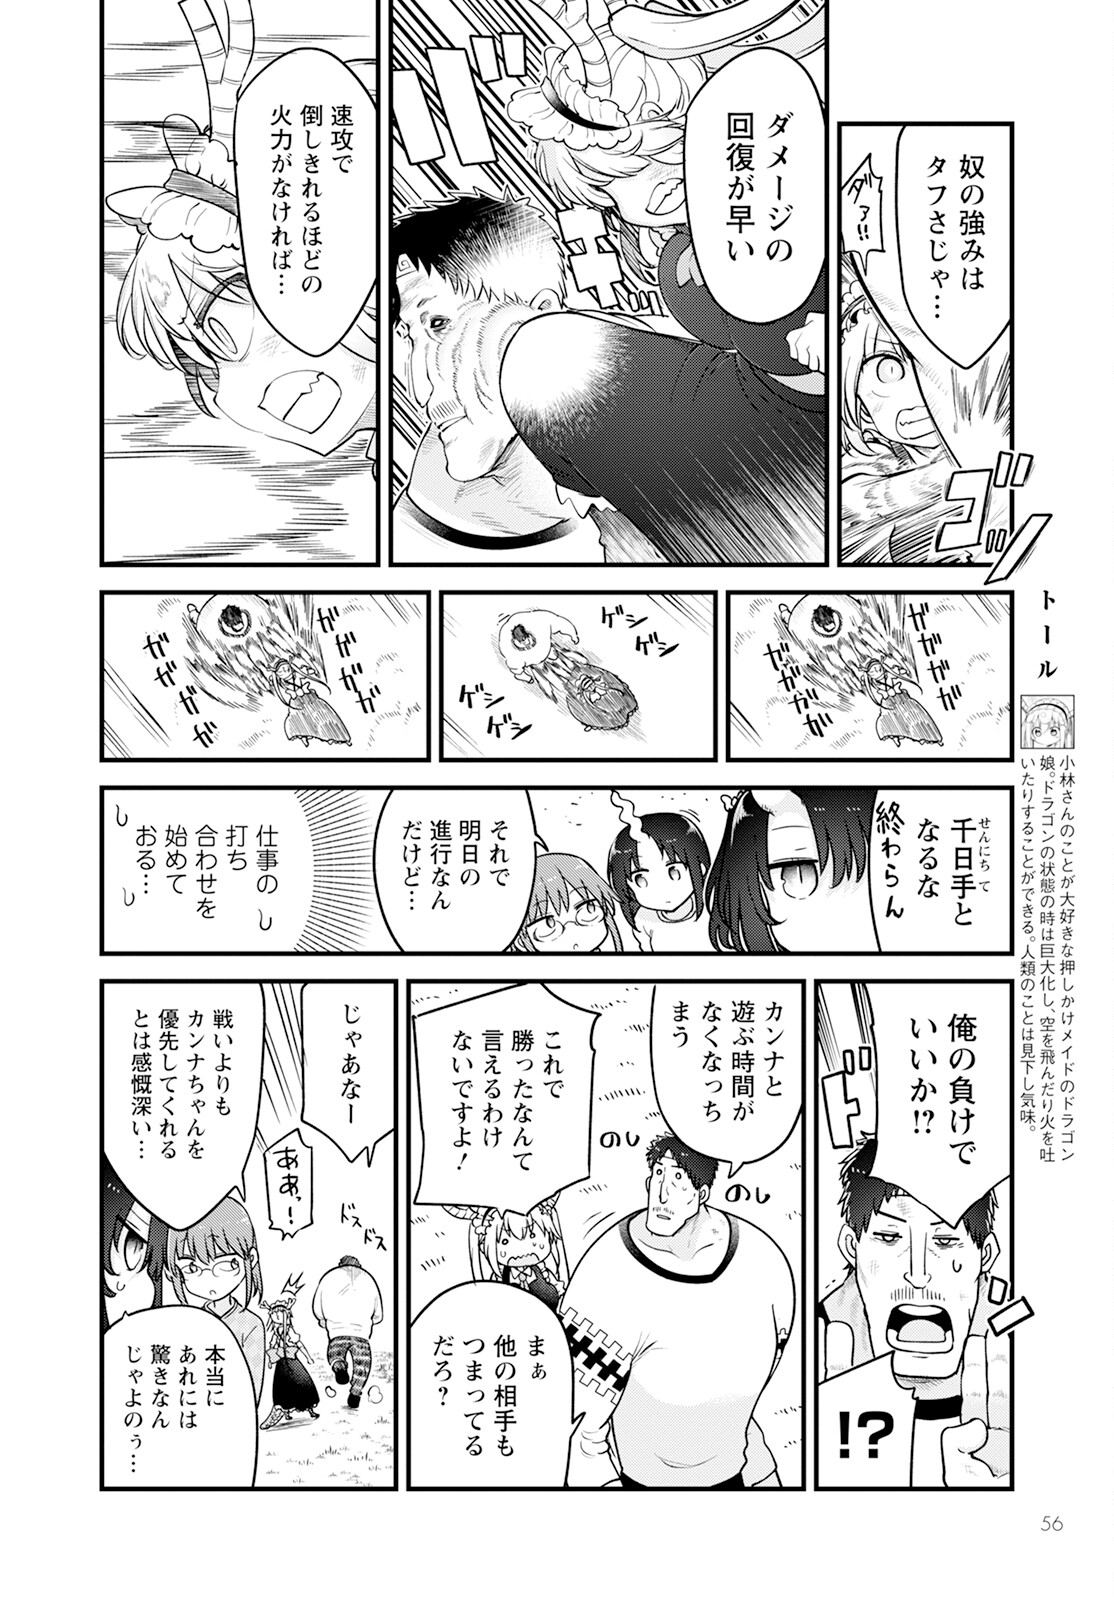 Kobayashi-san Chi no Maid Dragon - Chapter 139 - Page 4